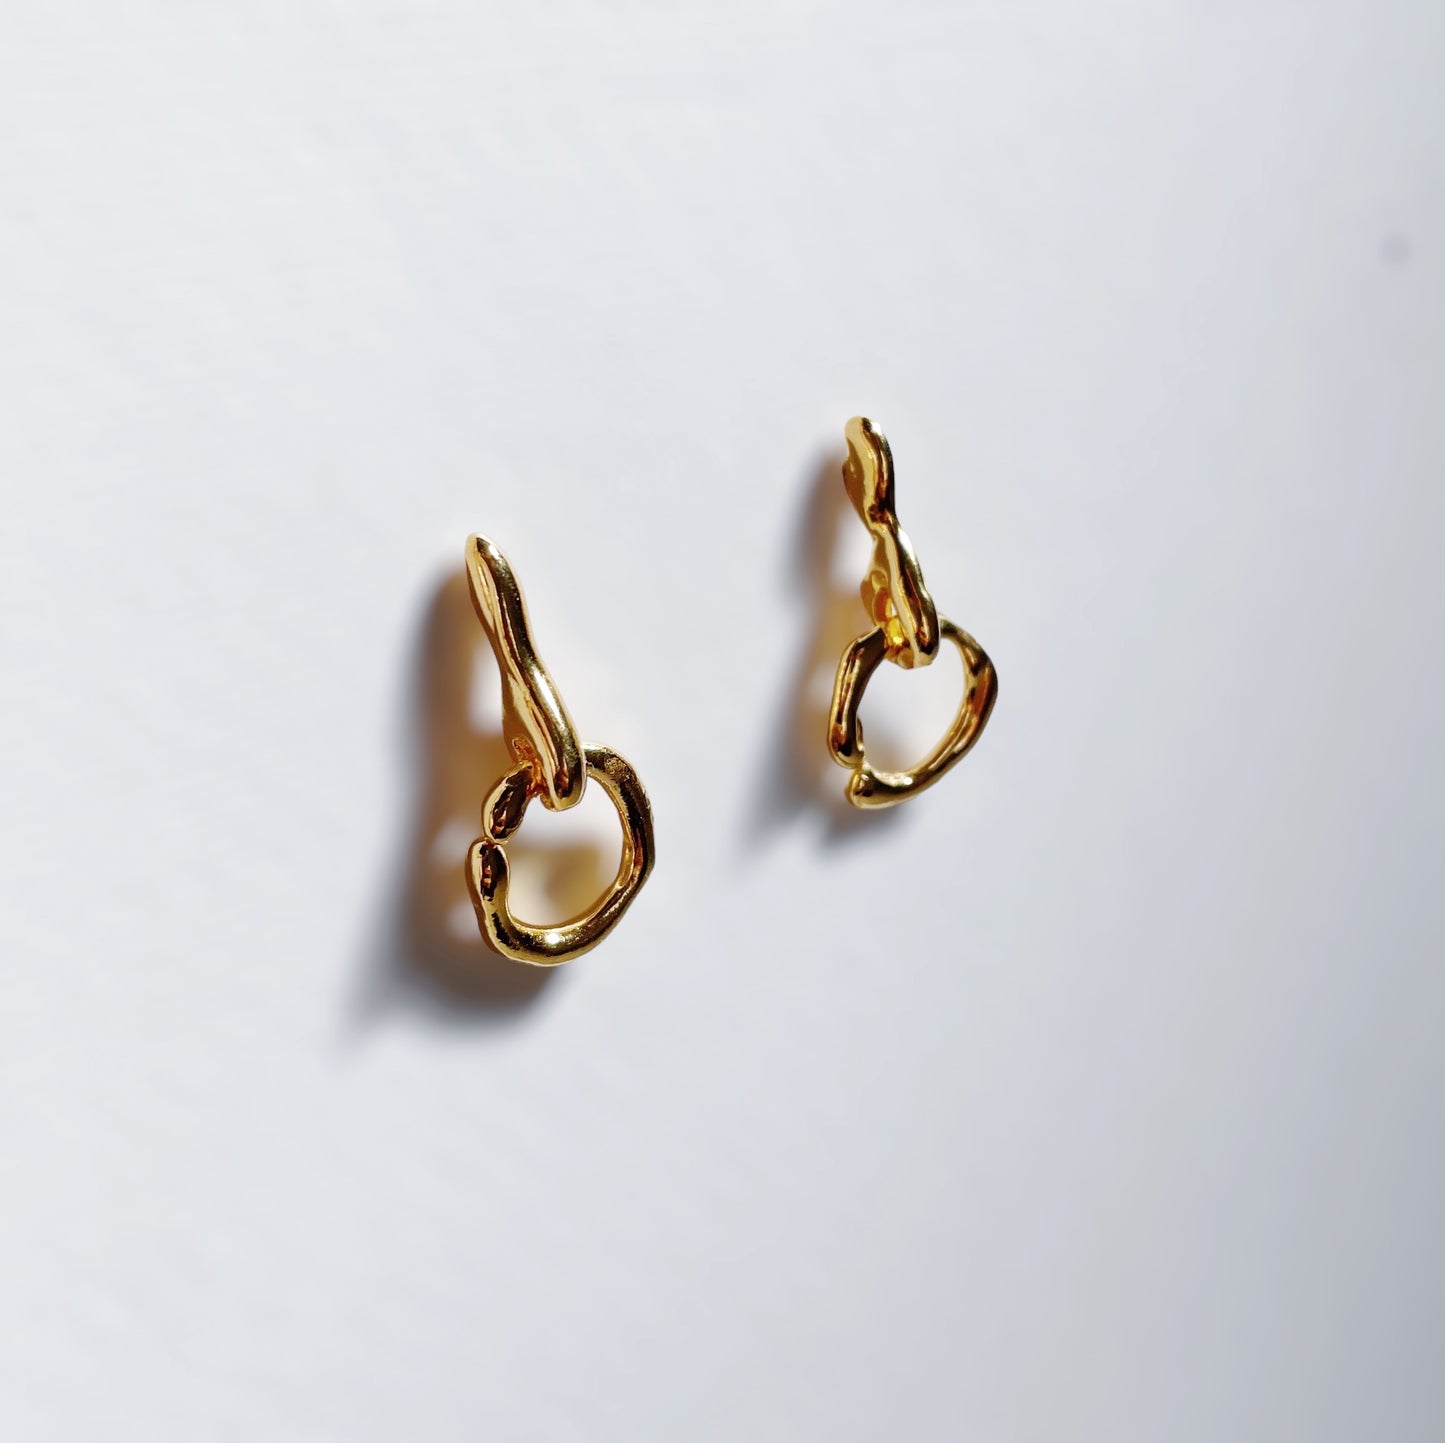 Lane earrings